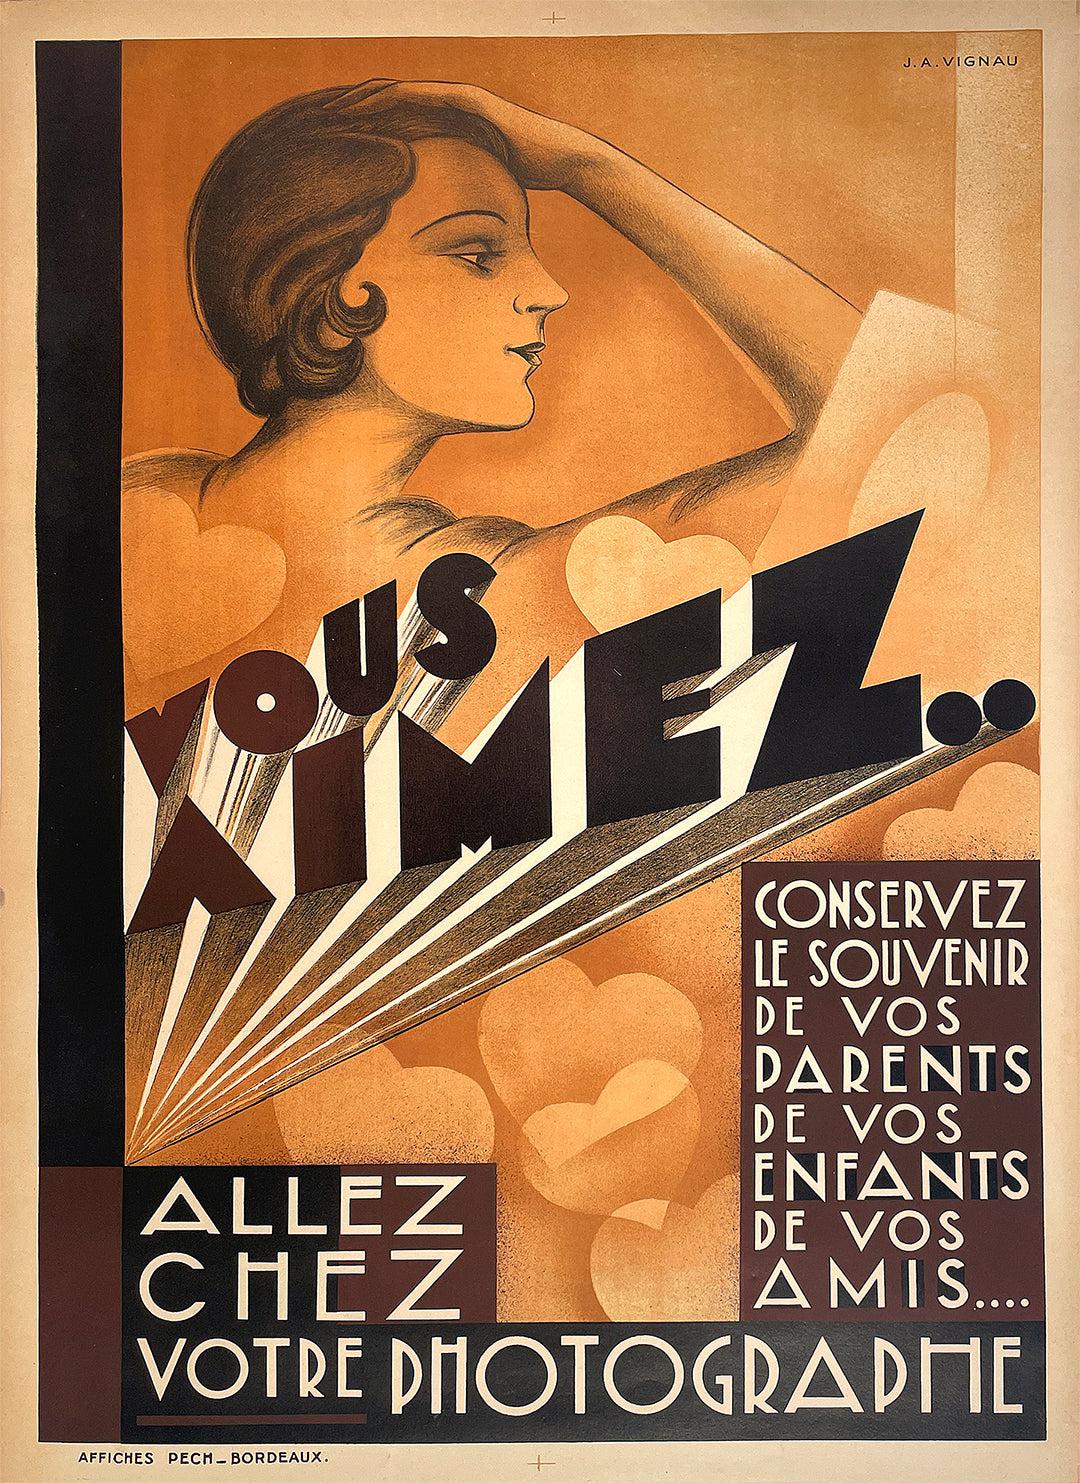 Original Vintage Vous Aimez Photography Poster by Vignau Art Deco c1930